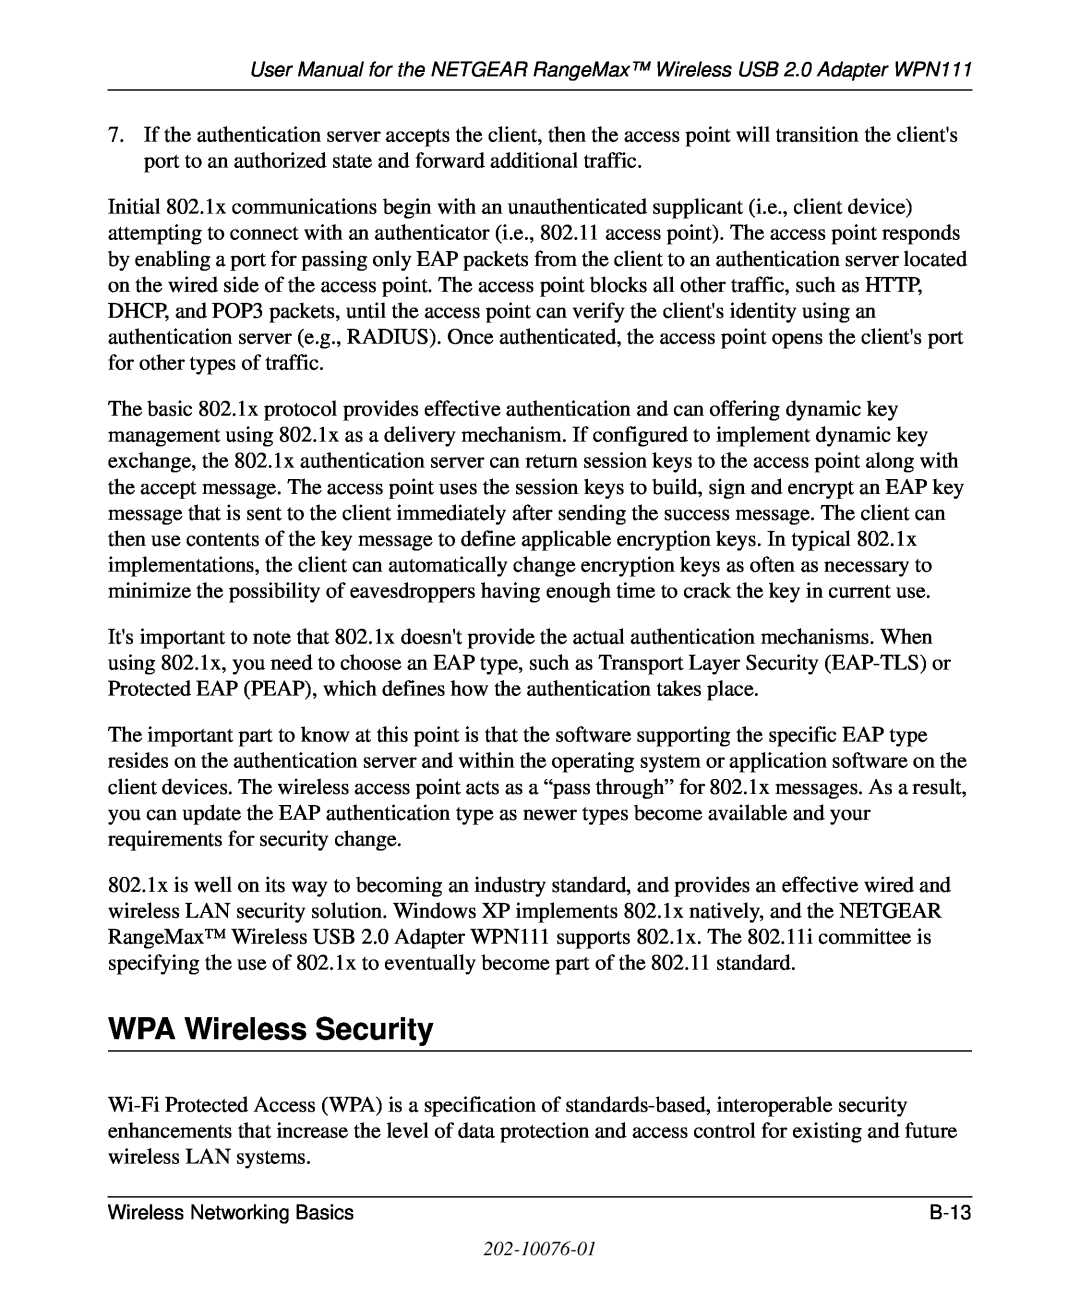 NETGEAR WPN111 user manual WPA Wireless Security, B -1 